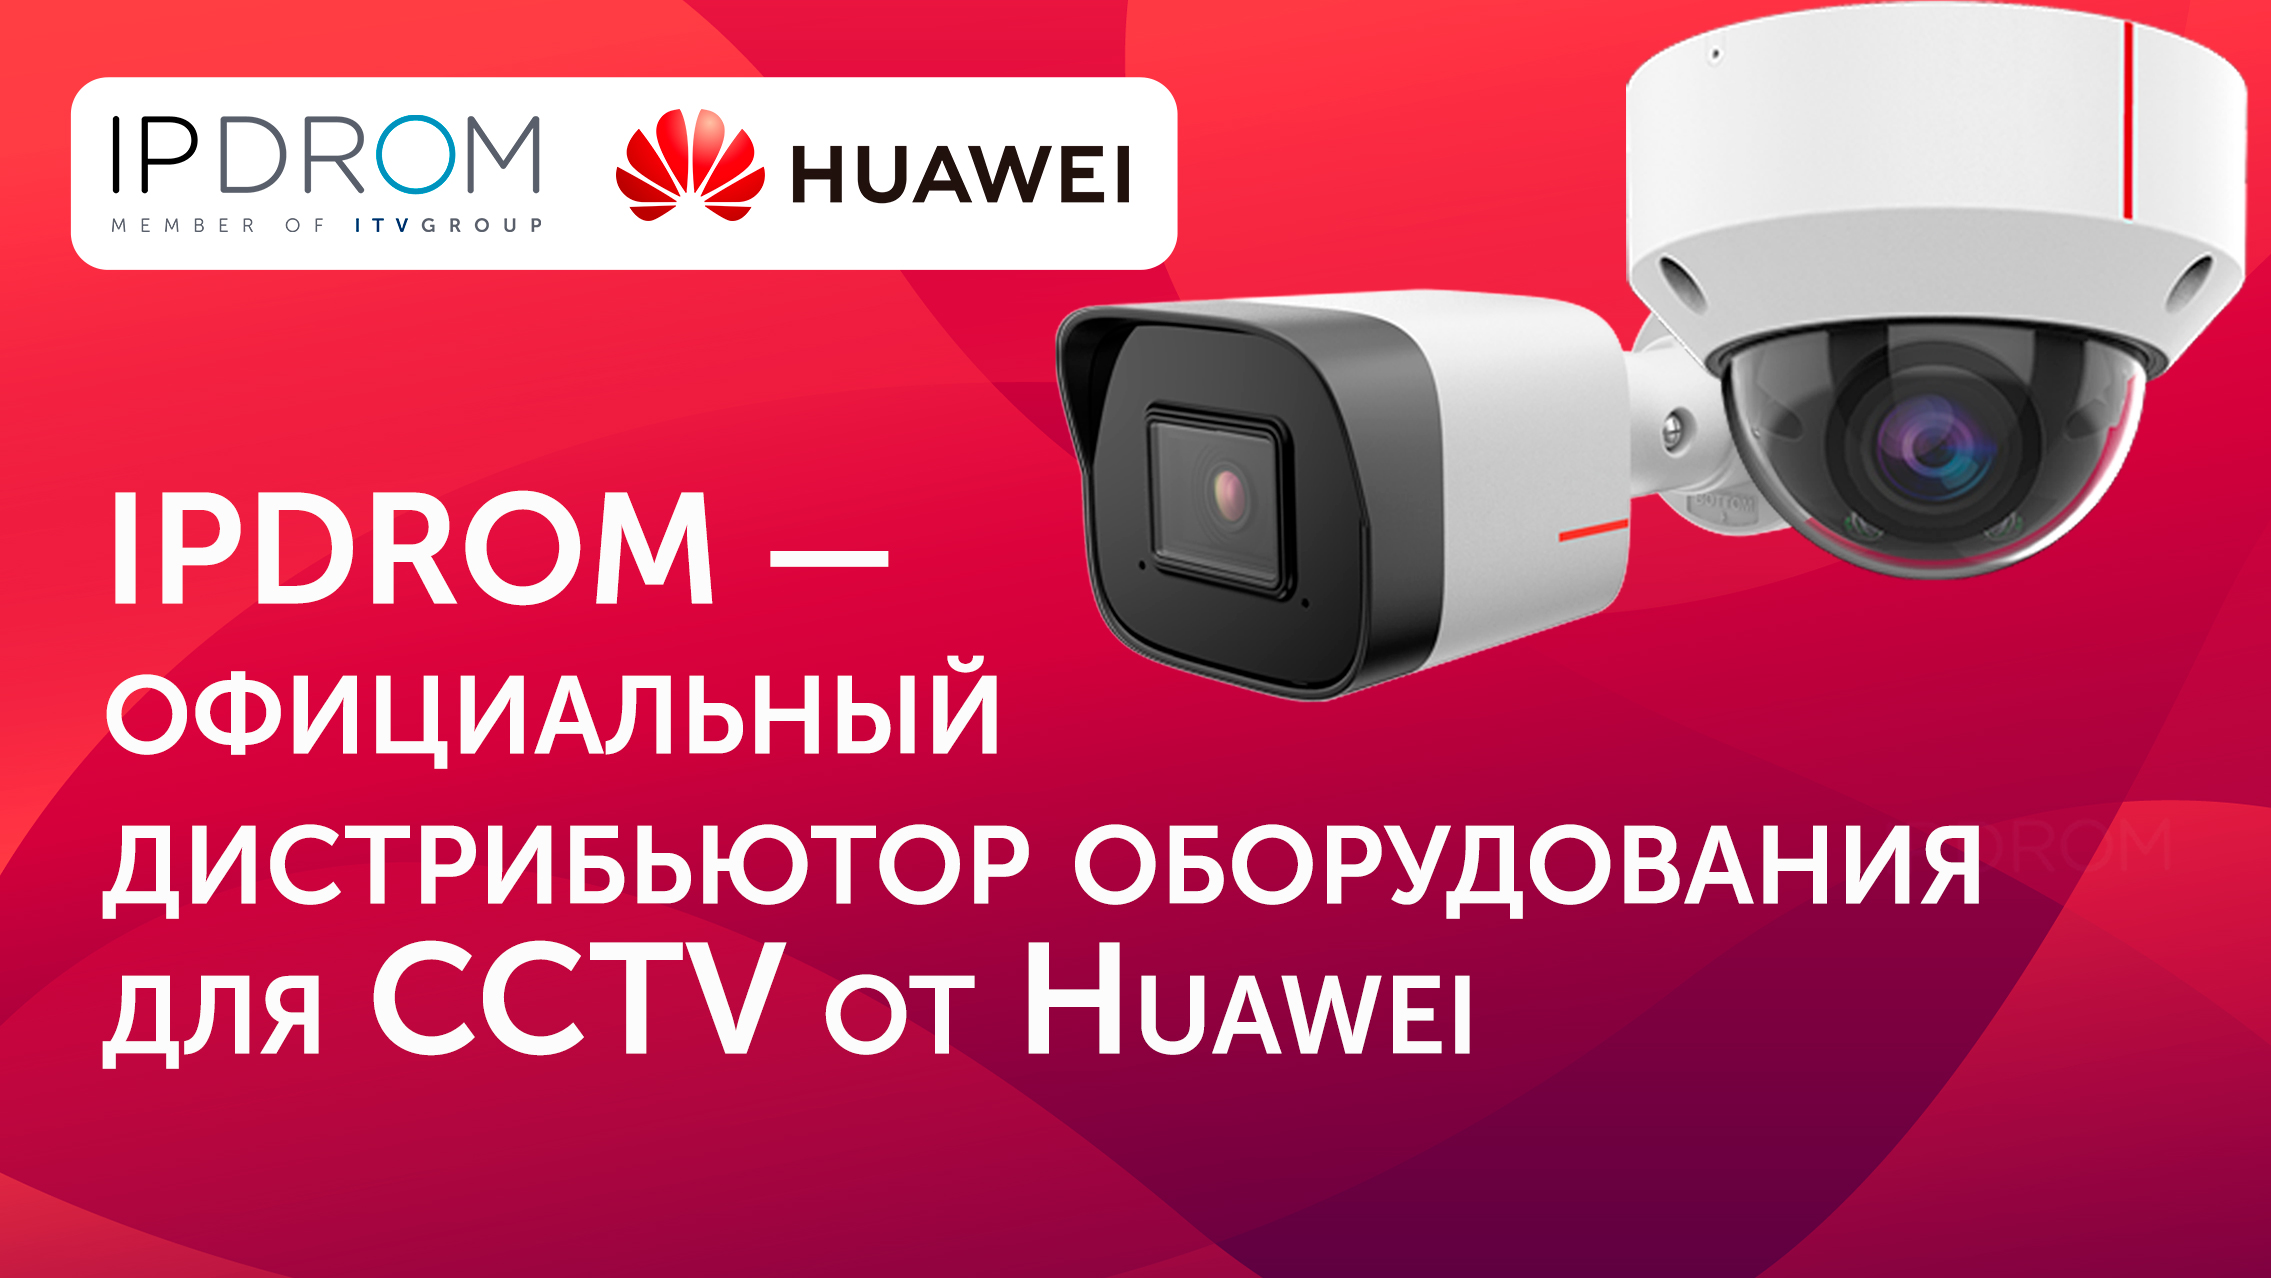 IPDROM — официальный дистрибьютор оборудования для CCTV от Huawei